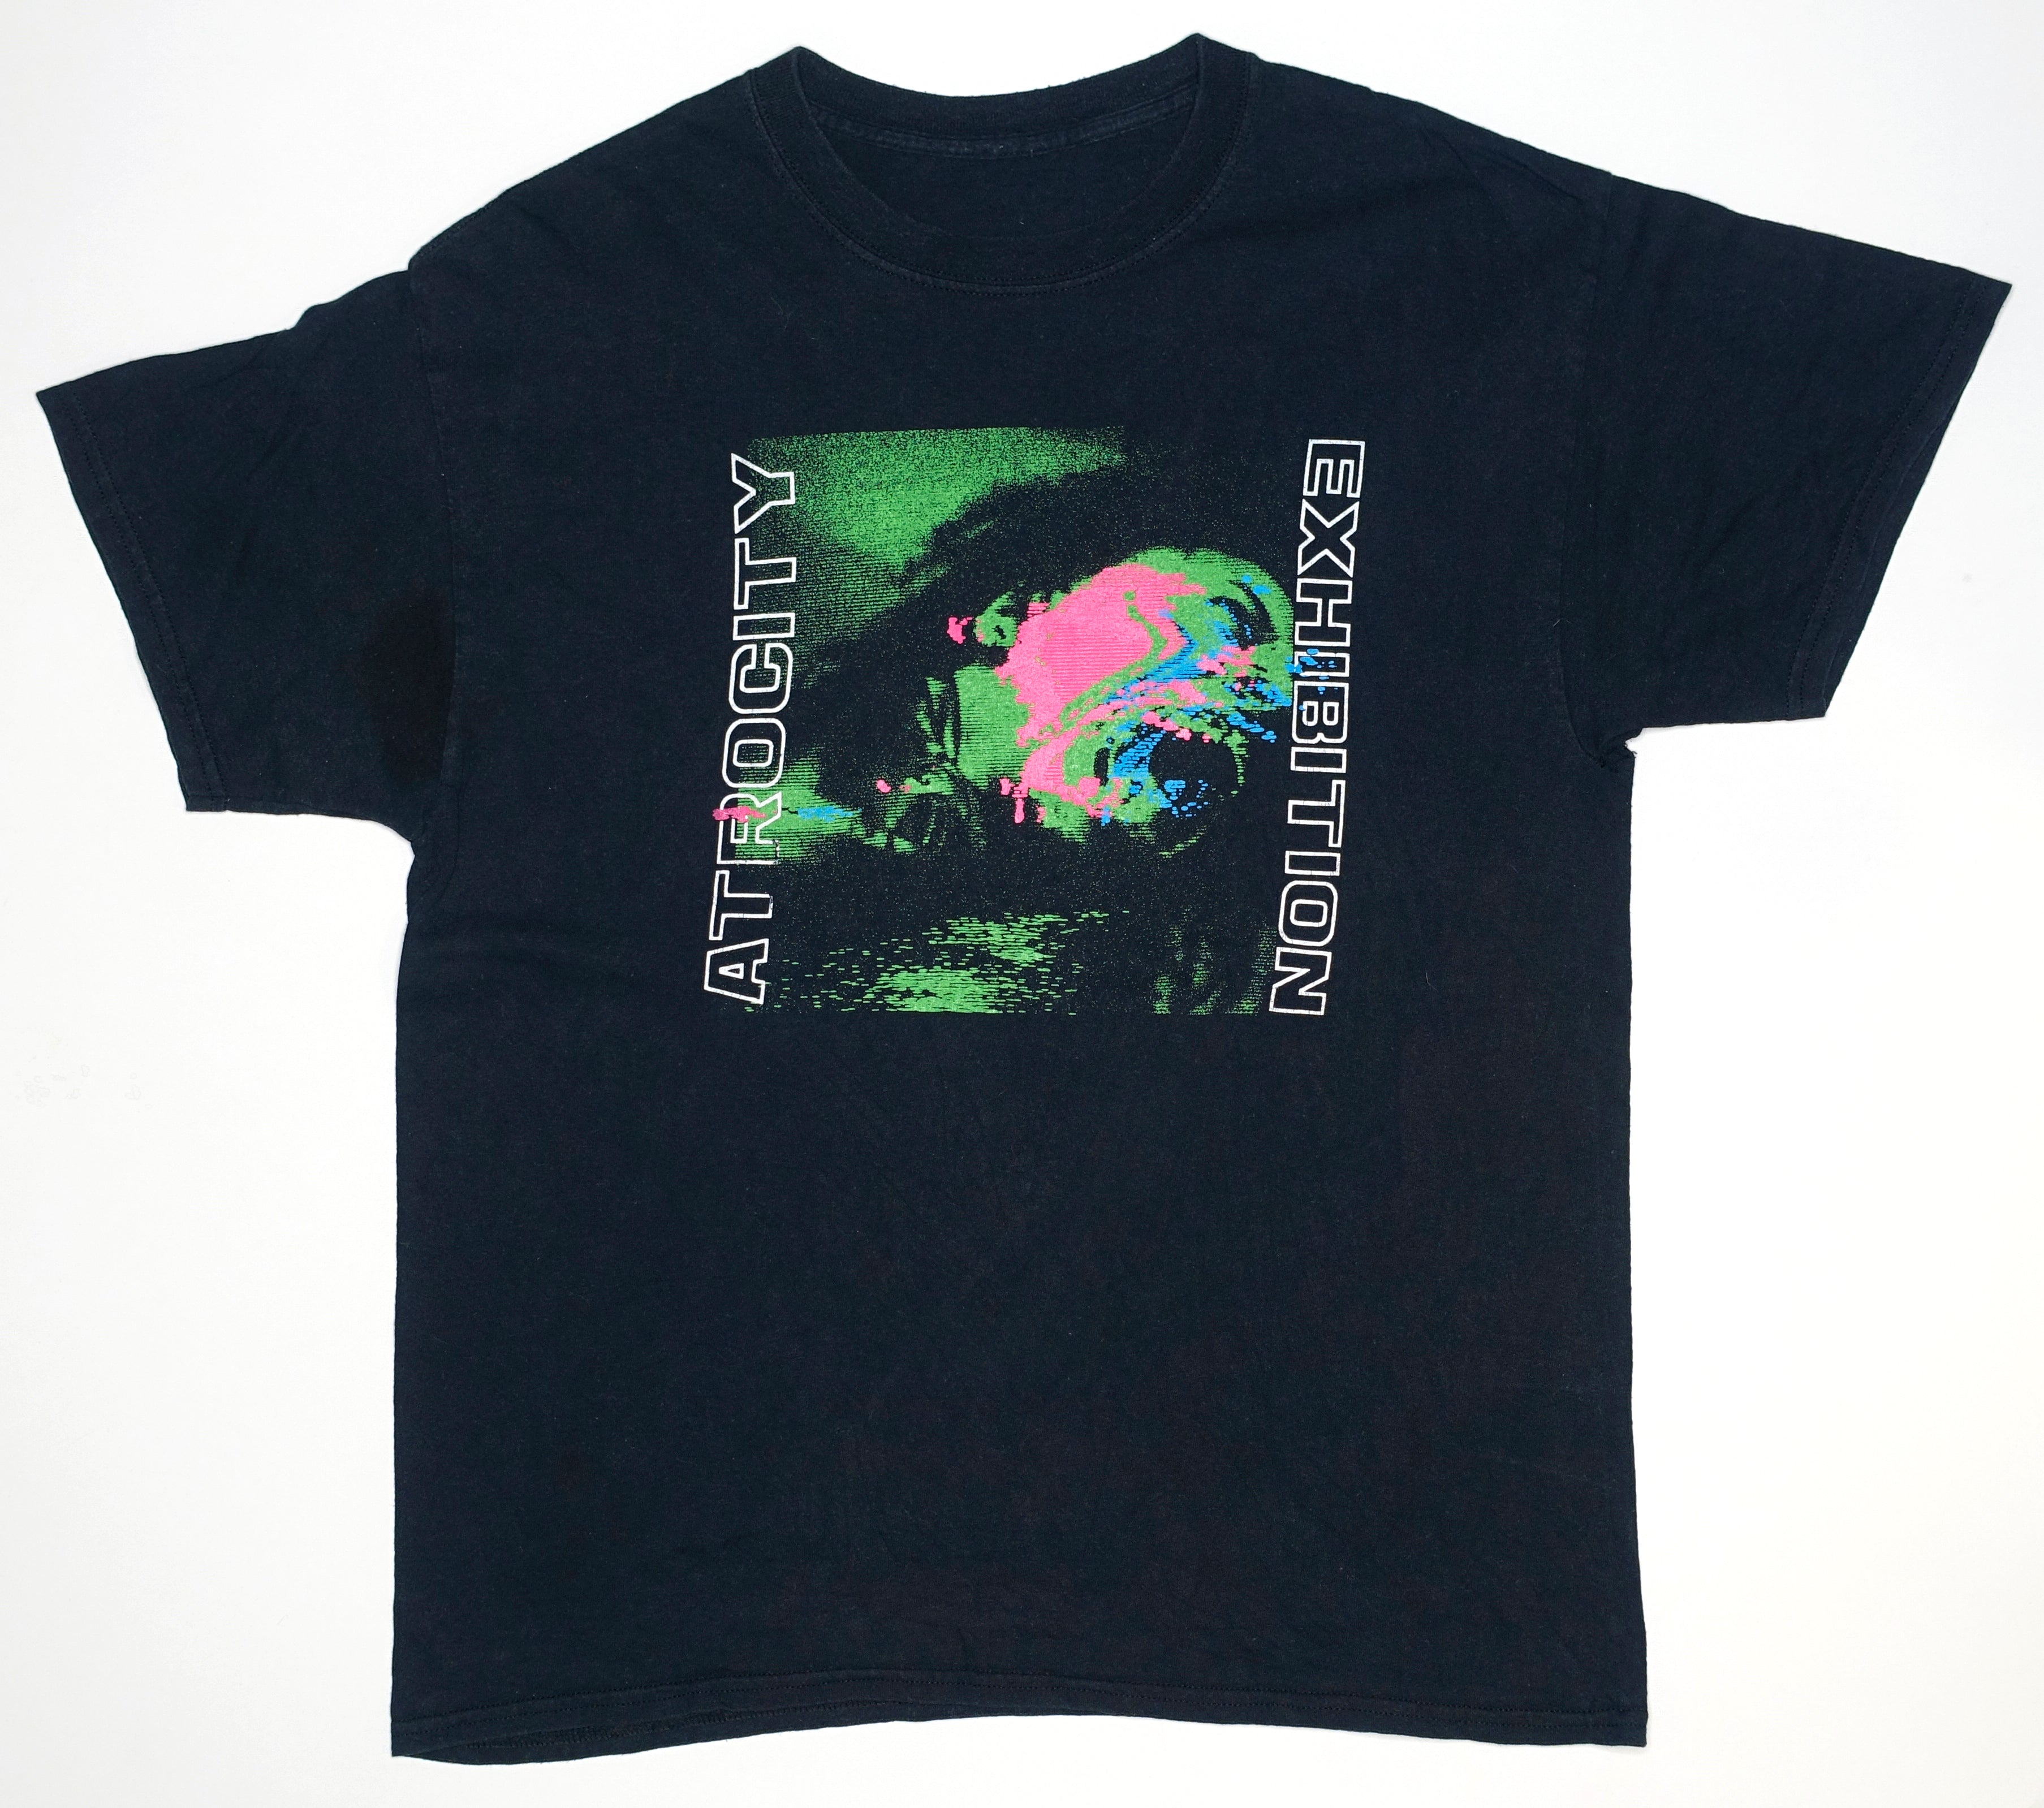 Danny Brown - Atrocity Exhibition  2016 Tour Shirt Size Large